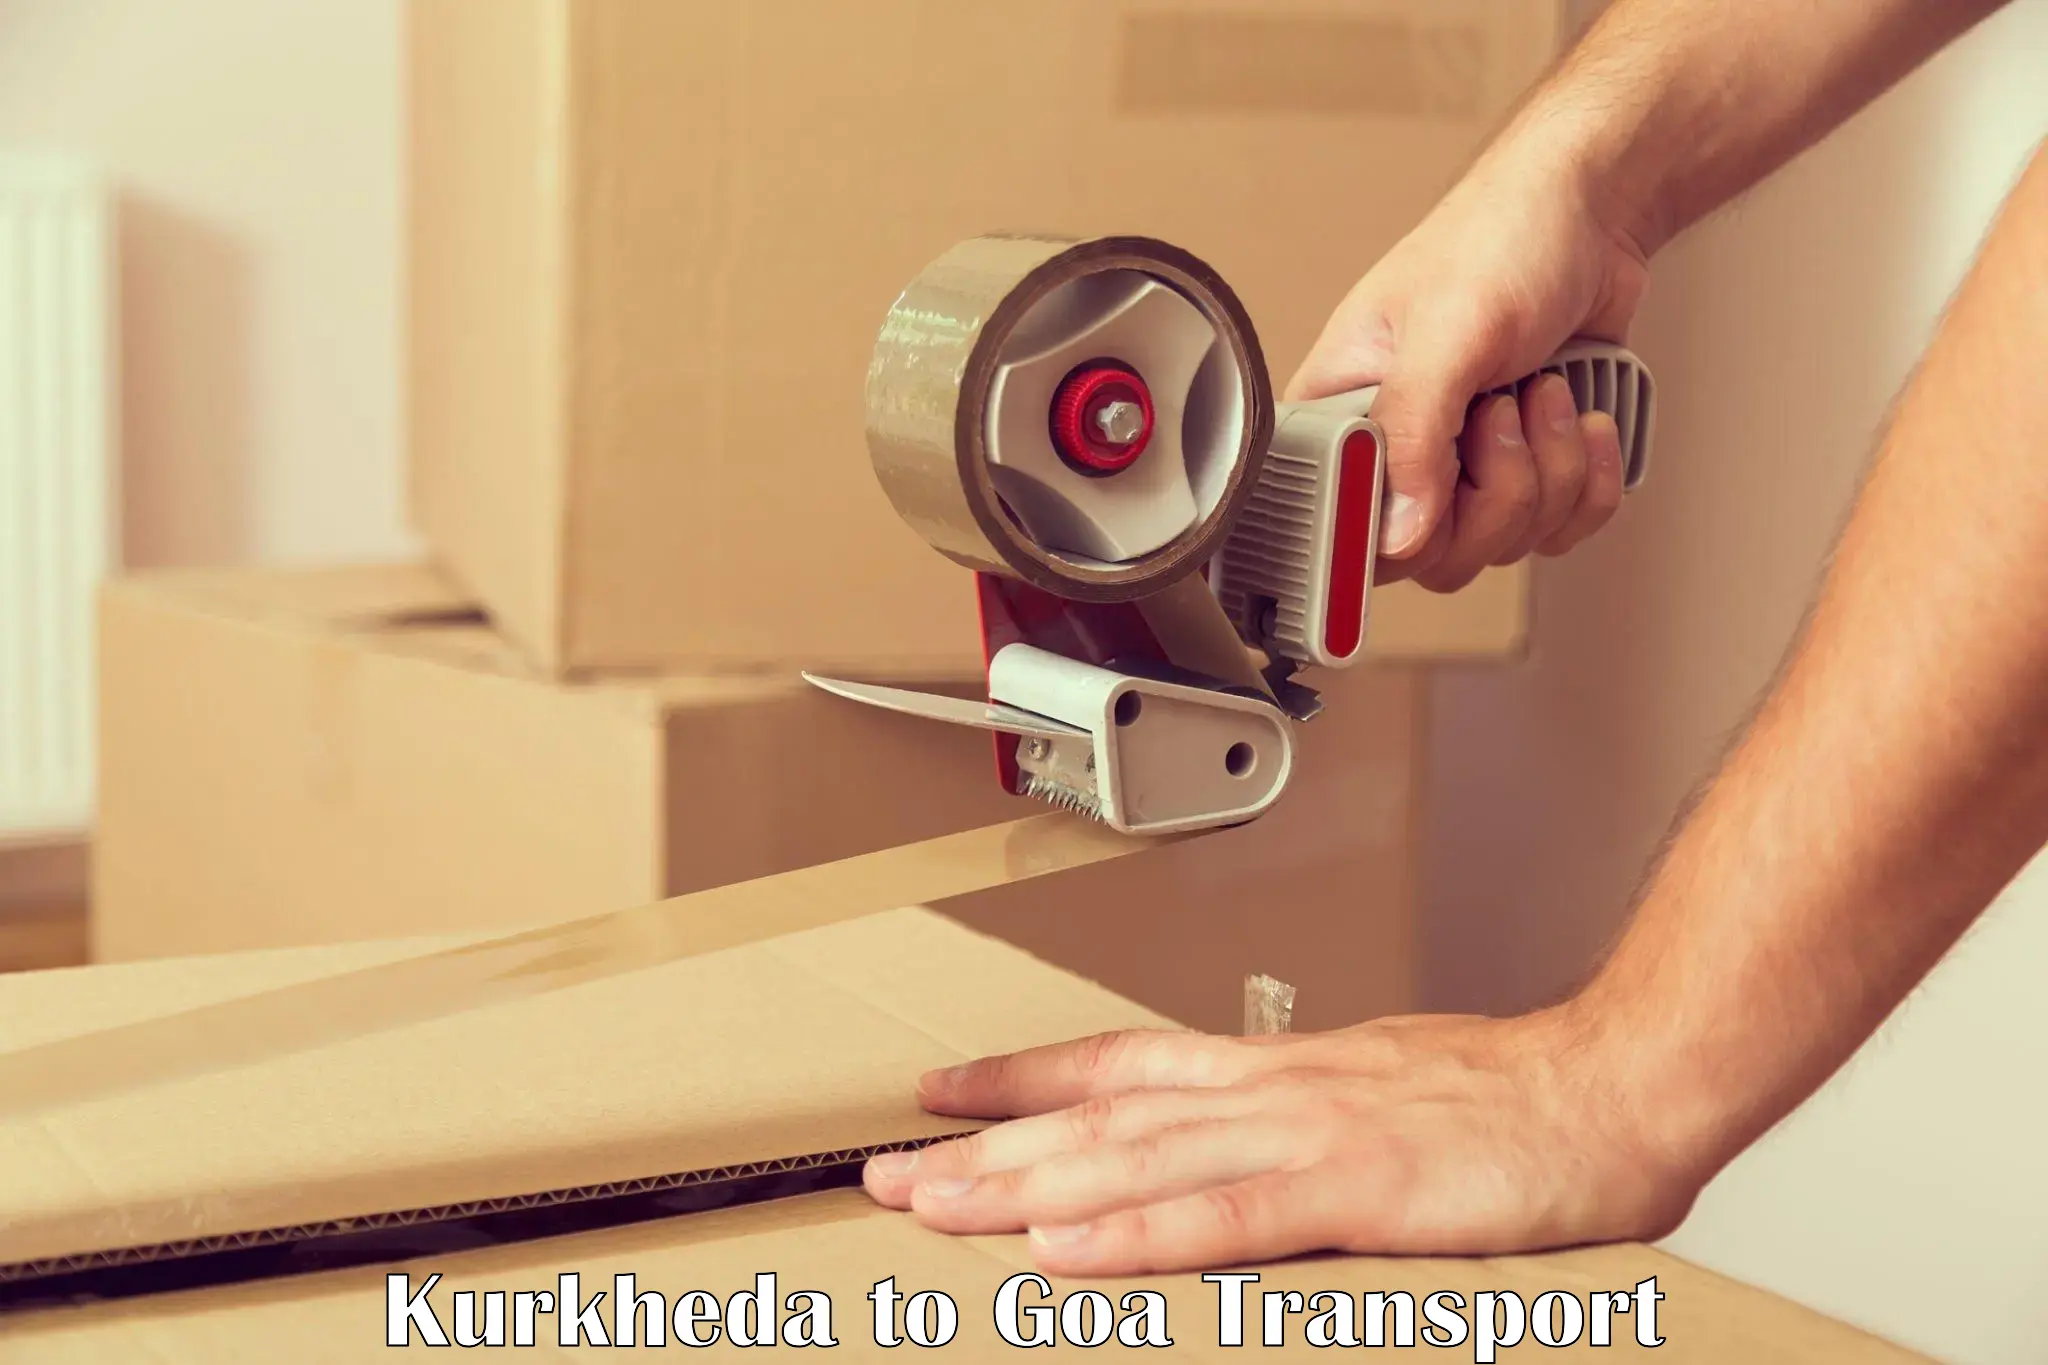 Commercial transport service Kurkheda to IIT Goa